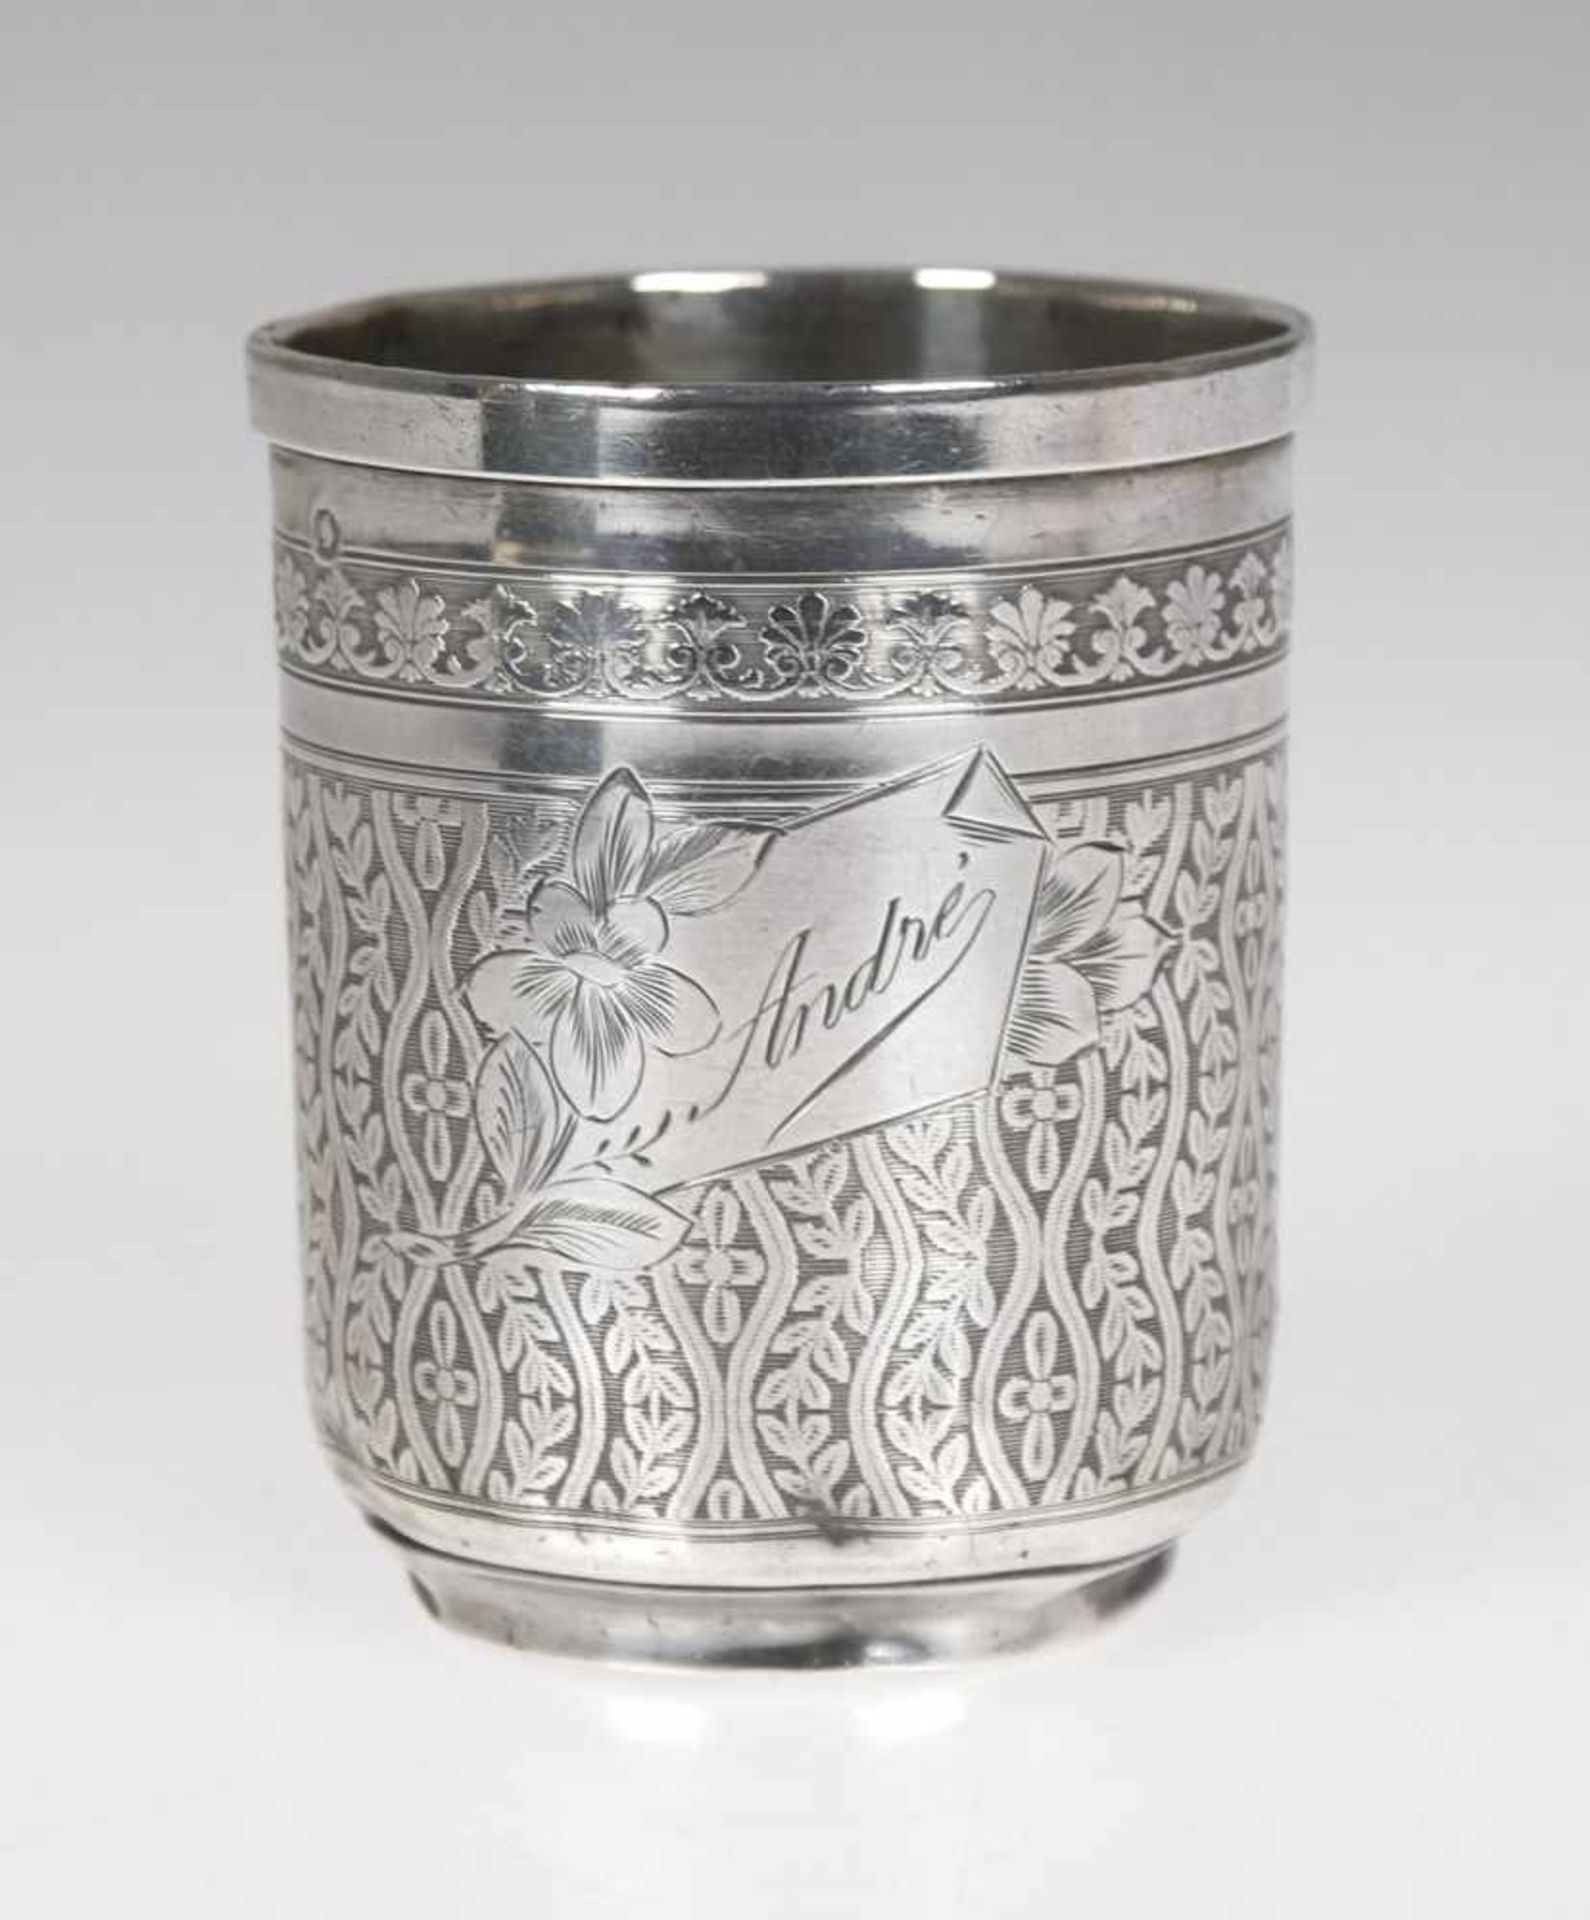 Becher, Frankreich 19. Jh., Silber, punziert, ca. 76 g, floral ziseliert, namensgravur "André", - Image 2 of 2